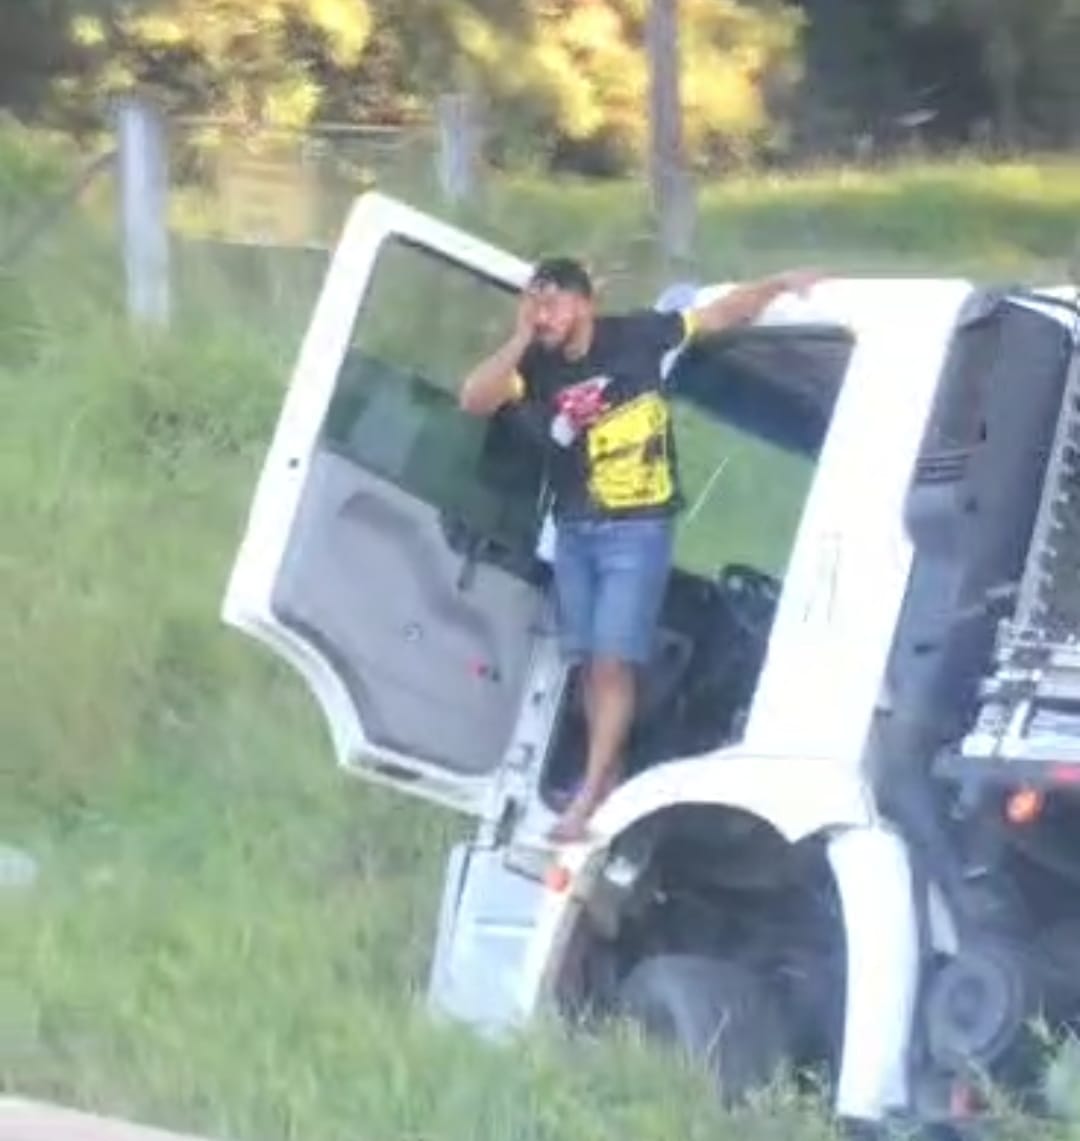 Urgente: Caminhão faz ultrapassagem perigosa e vai parar na vegetação às margens da BR-376, em Ponta Grossa